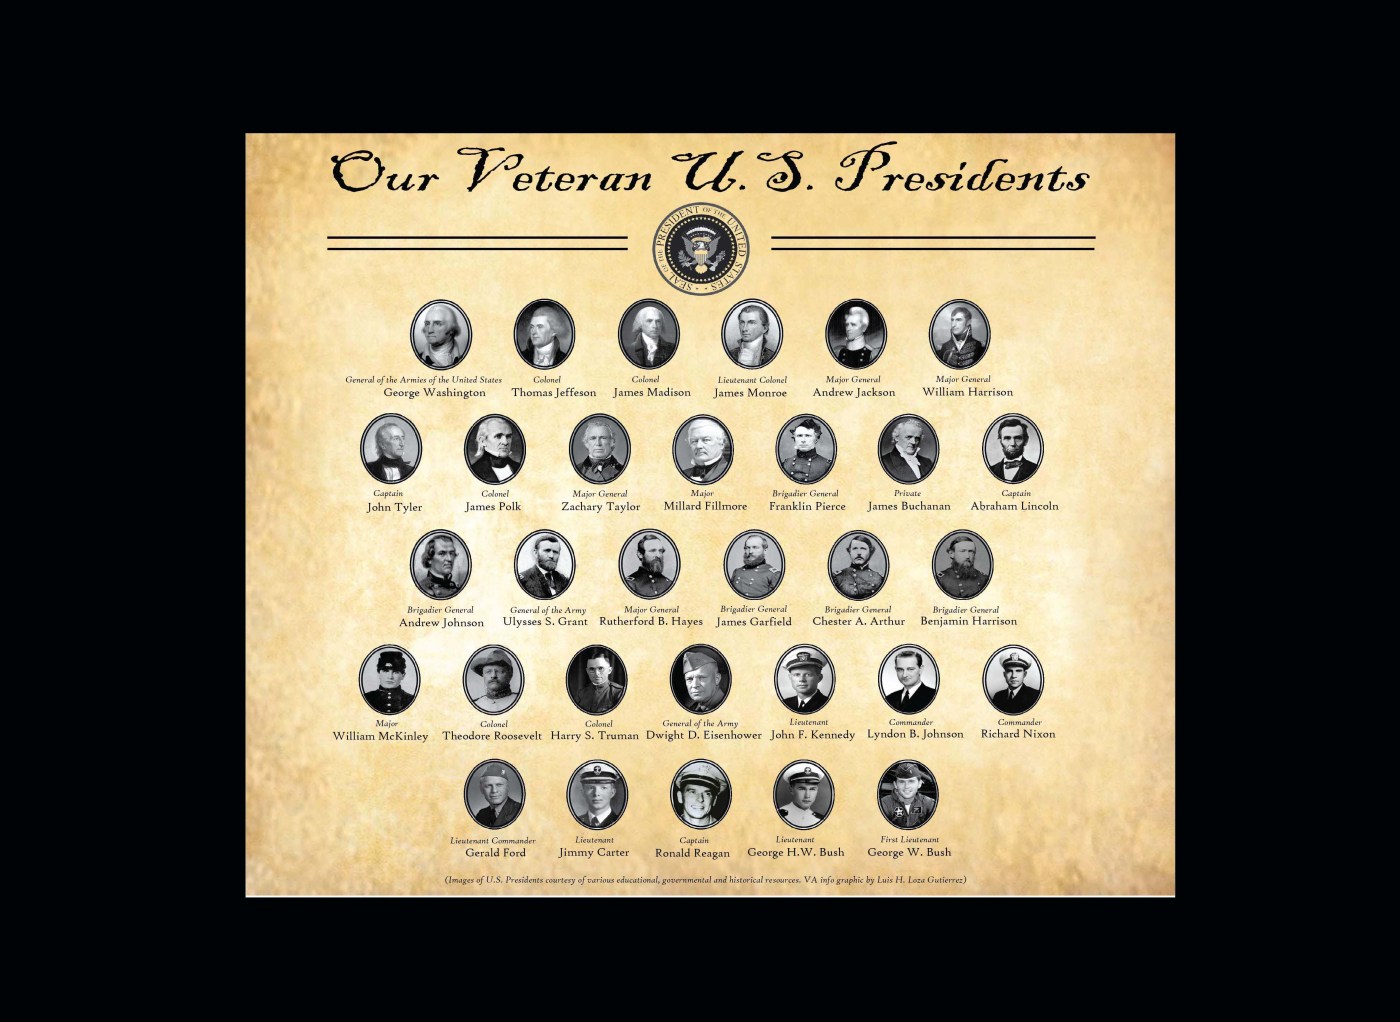 Our Veteran U.S. Presidents